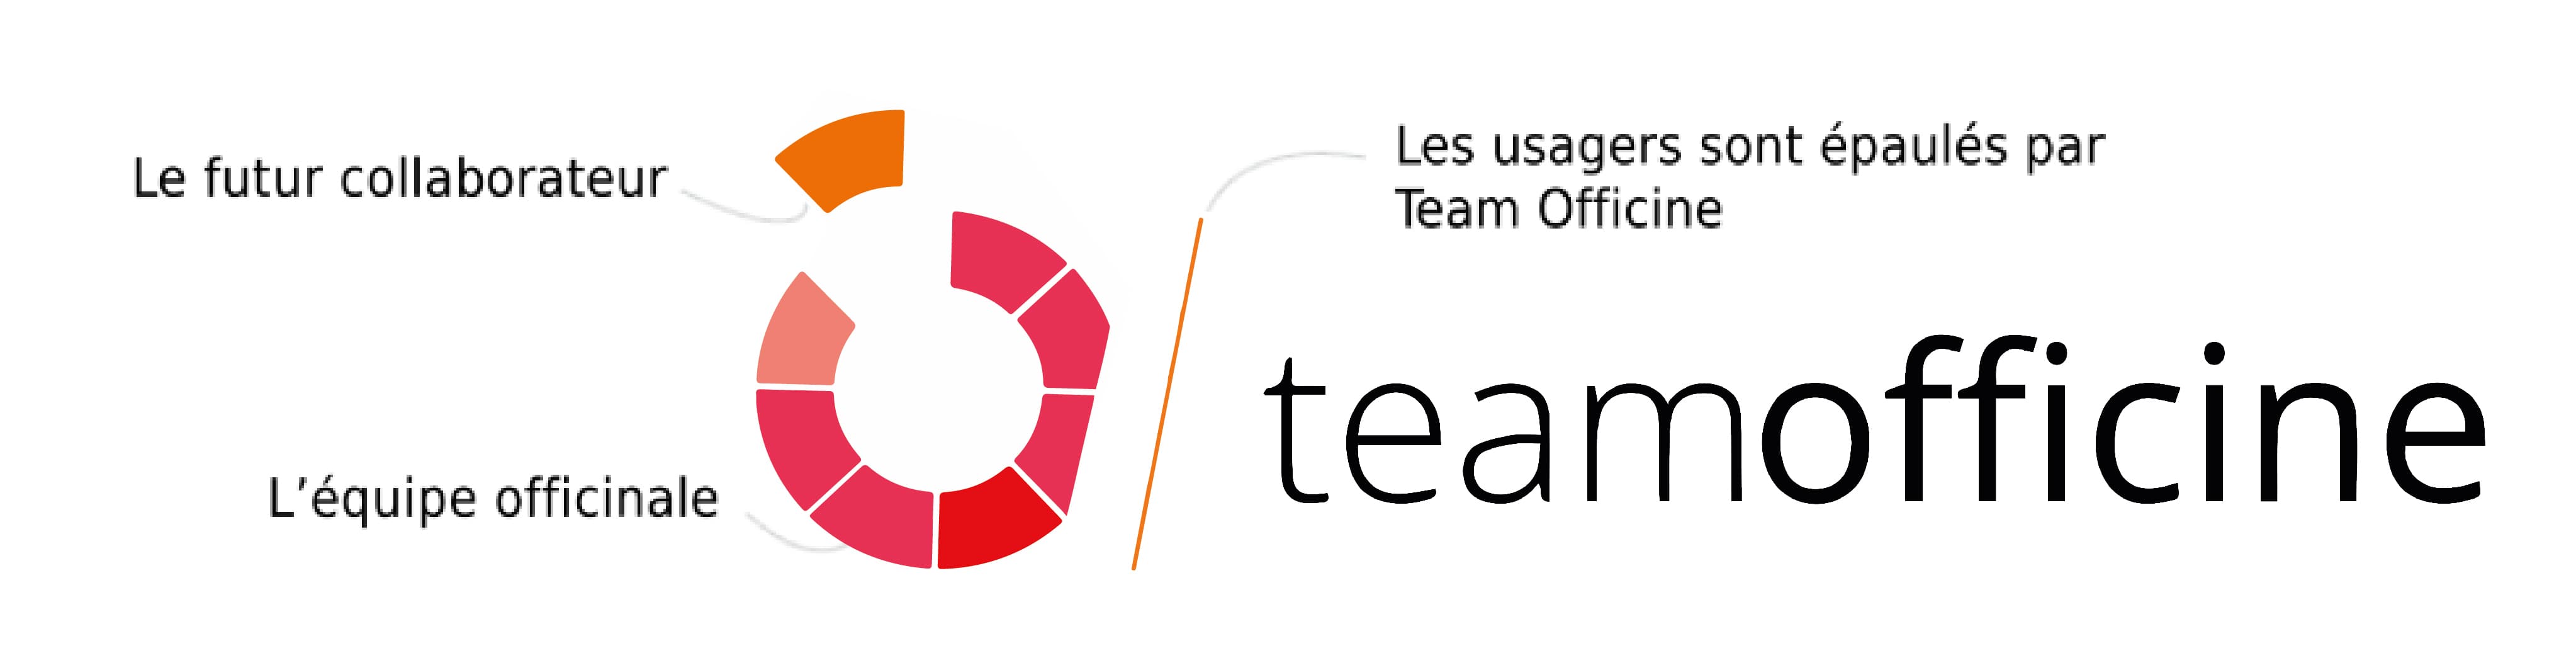 Explications du logo de Team Officine